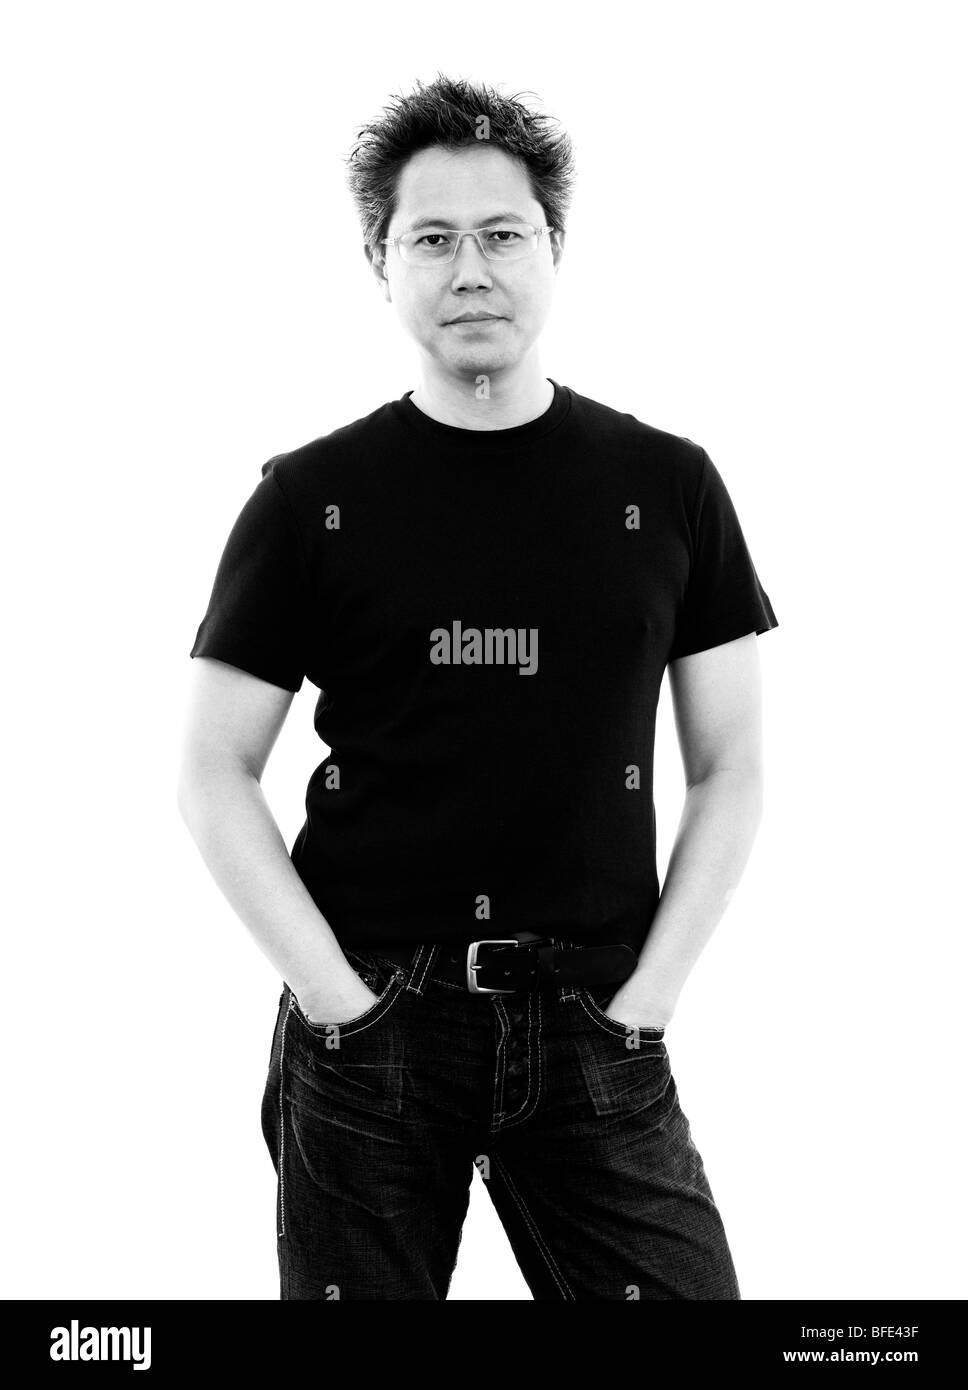 Homme asiatique de 44 ans portait un jean et un t-shirt standing against a white background Banque D'Images